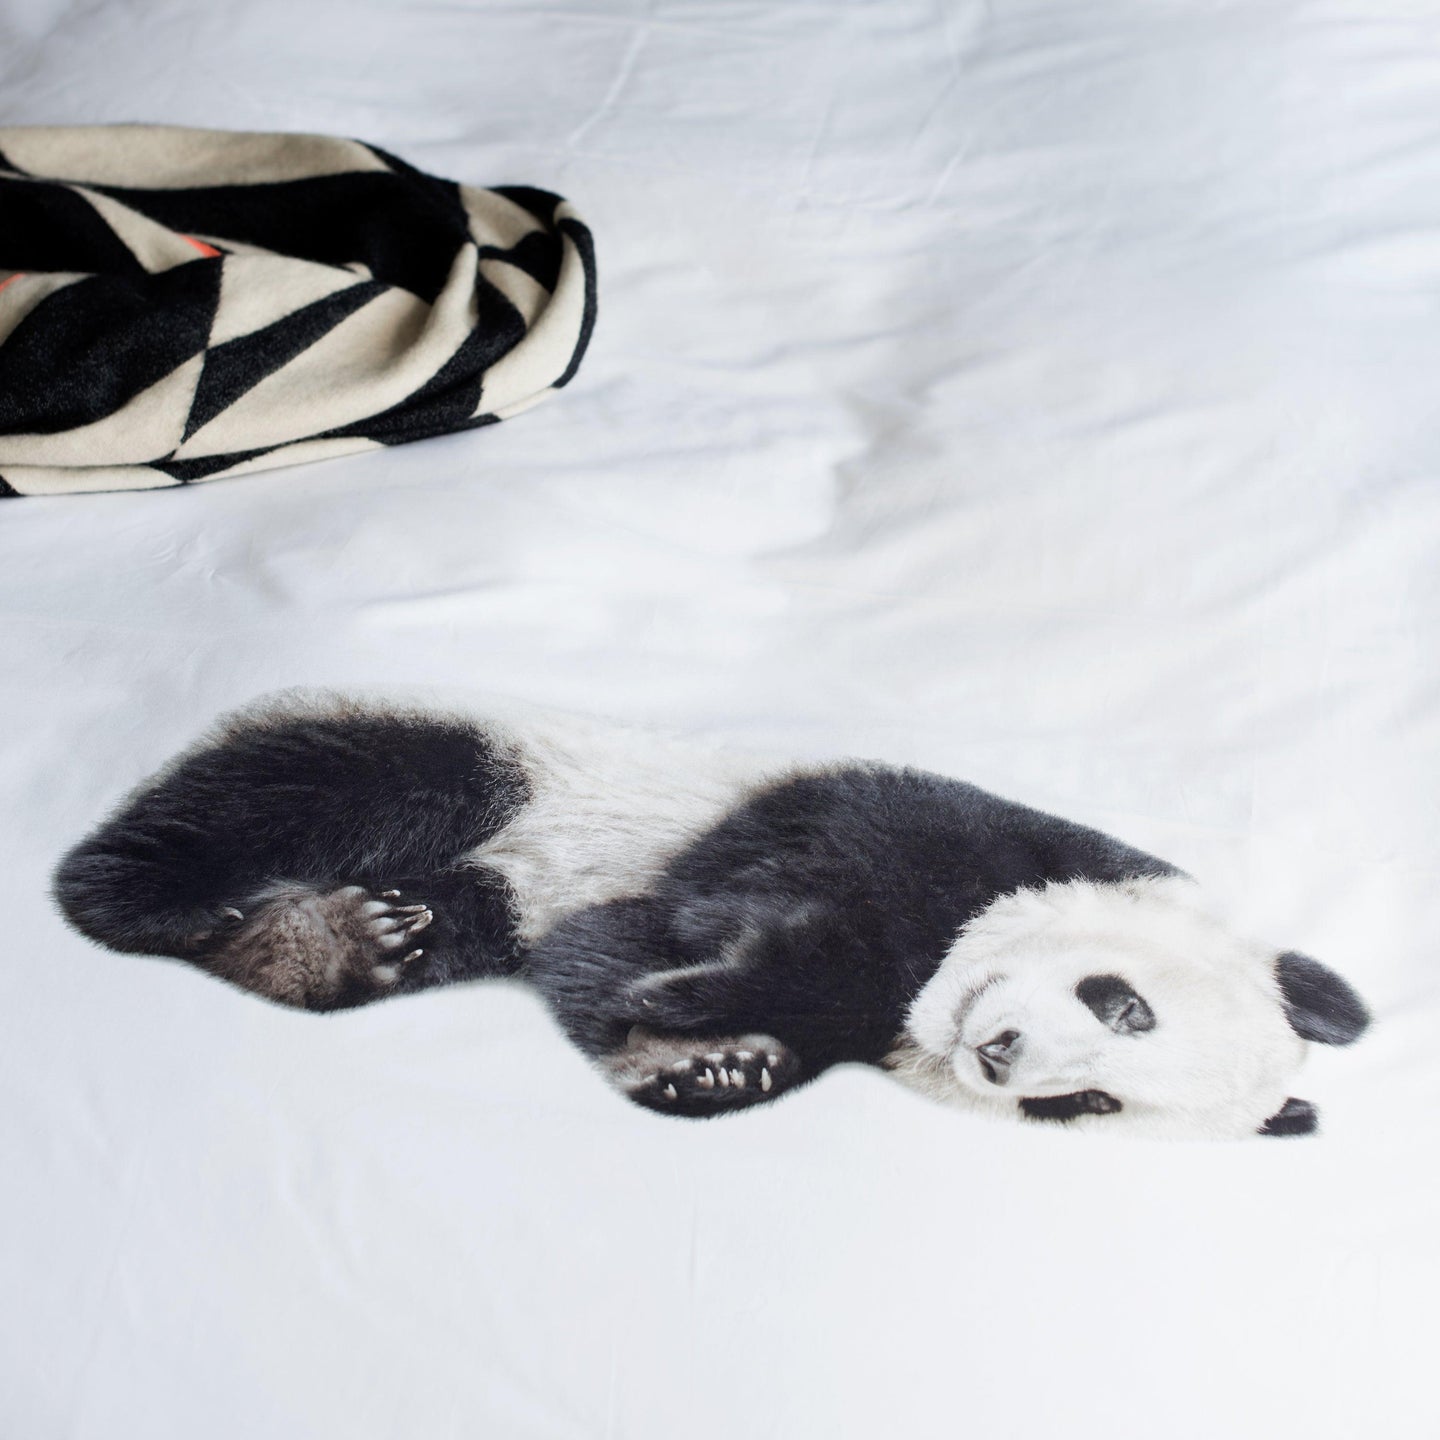 Lazy Panda dekbedovertrek - SNURK